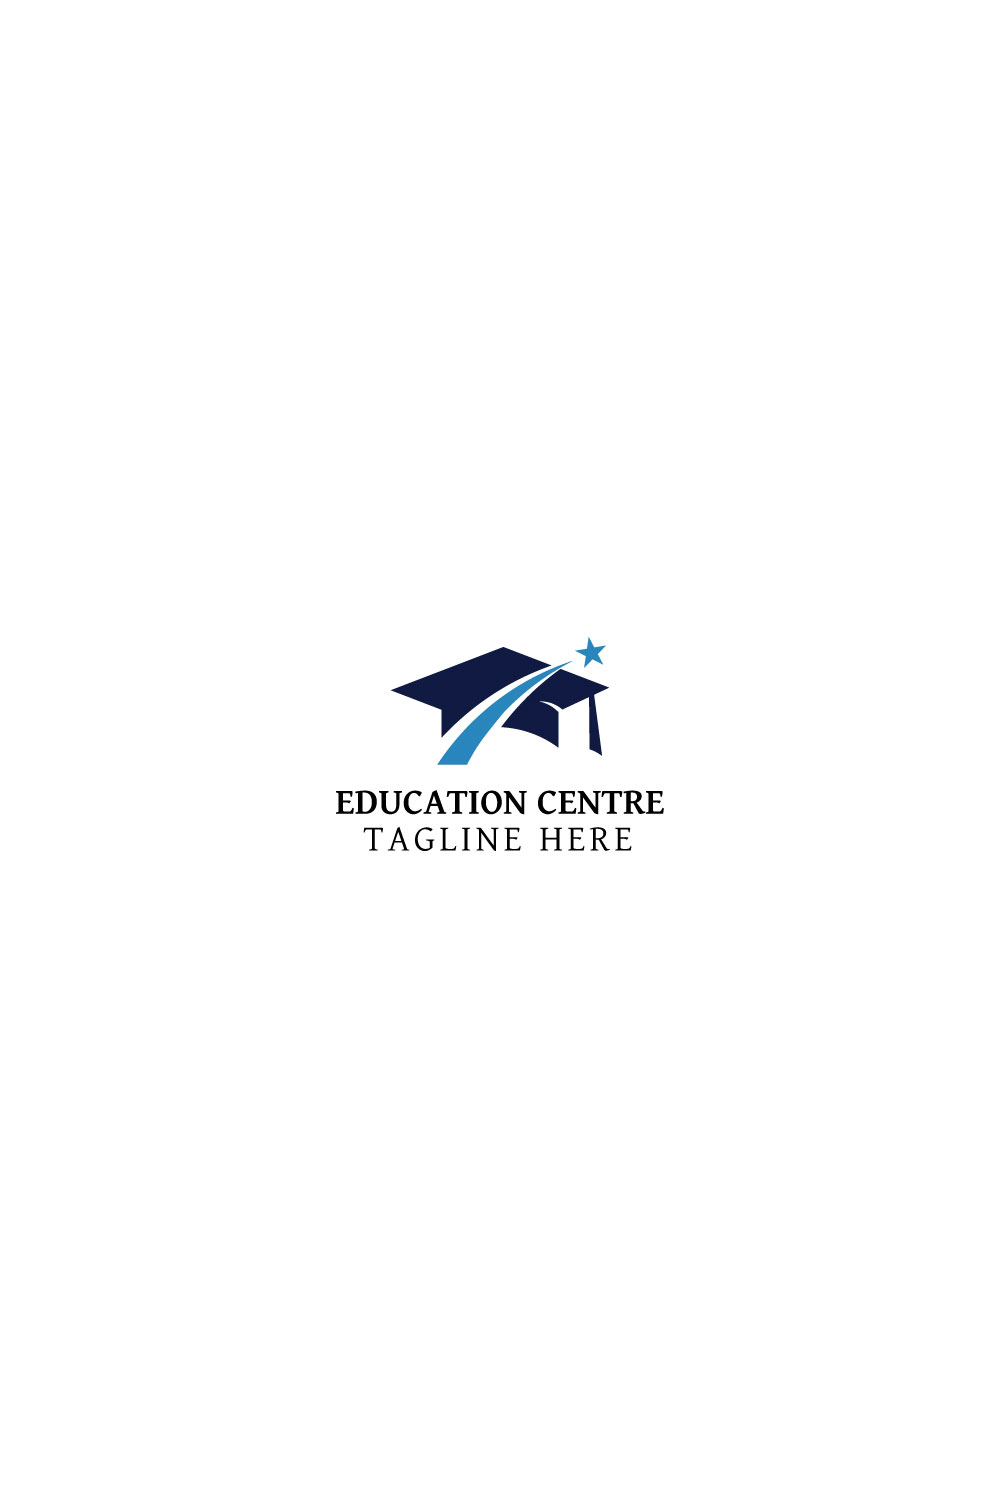 Education Centre logo design pinterest preview image.